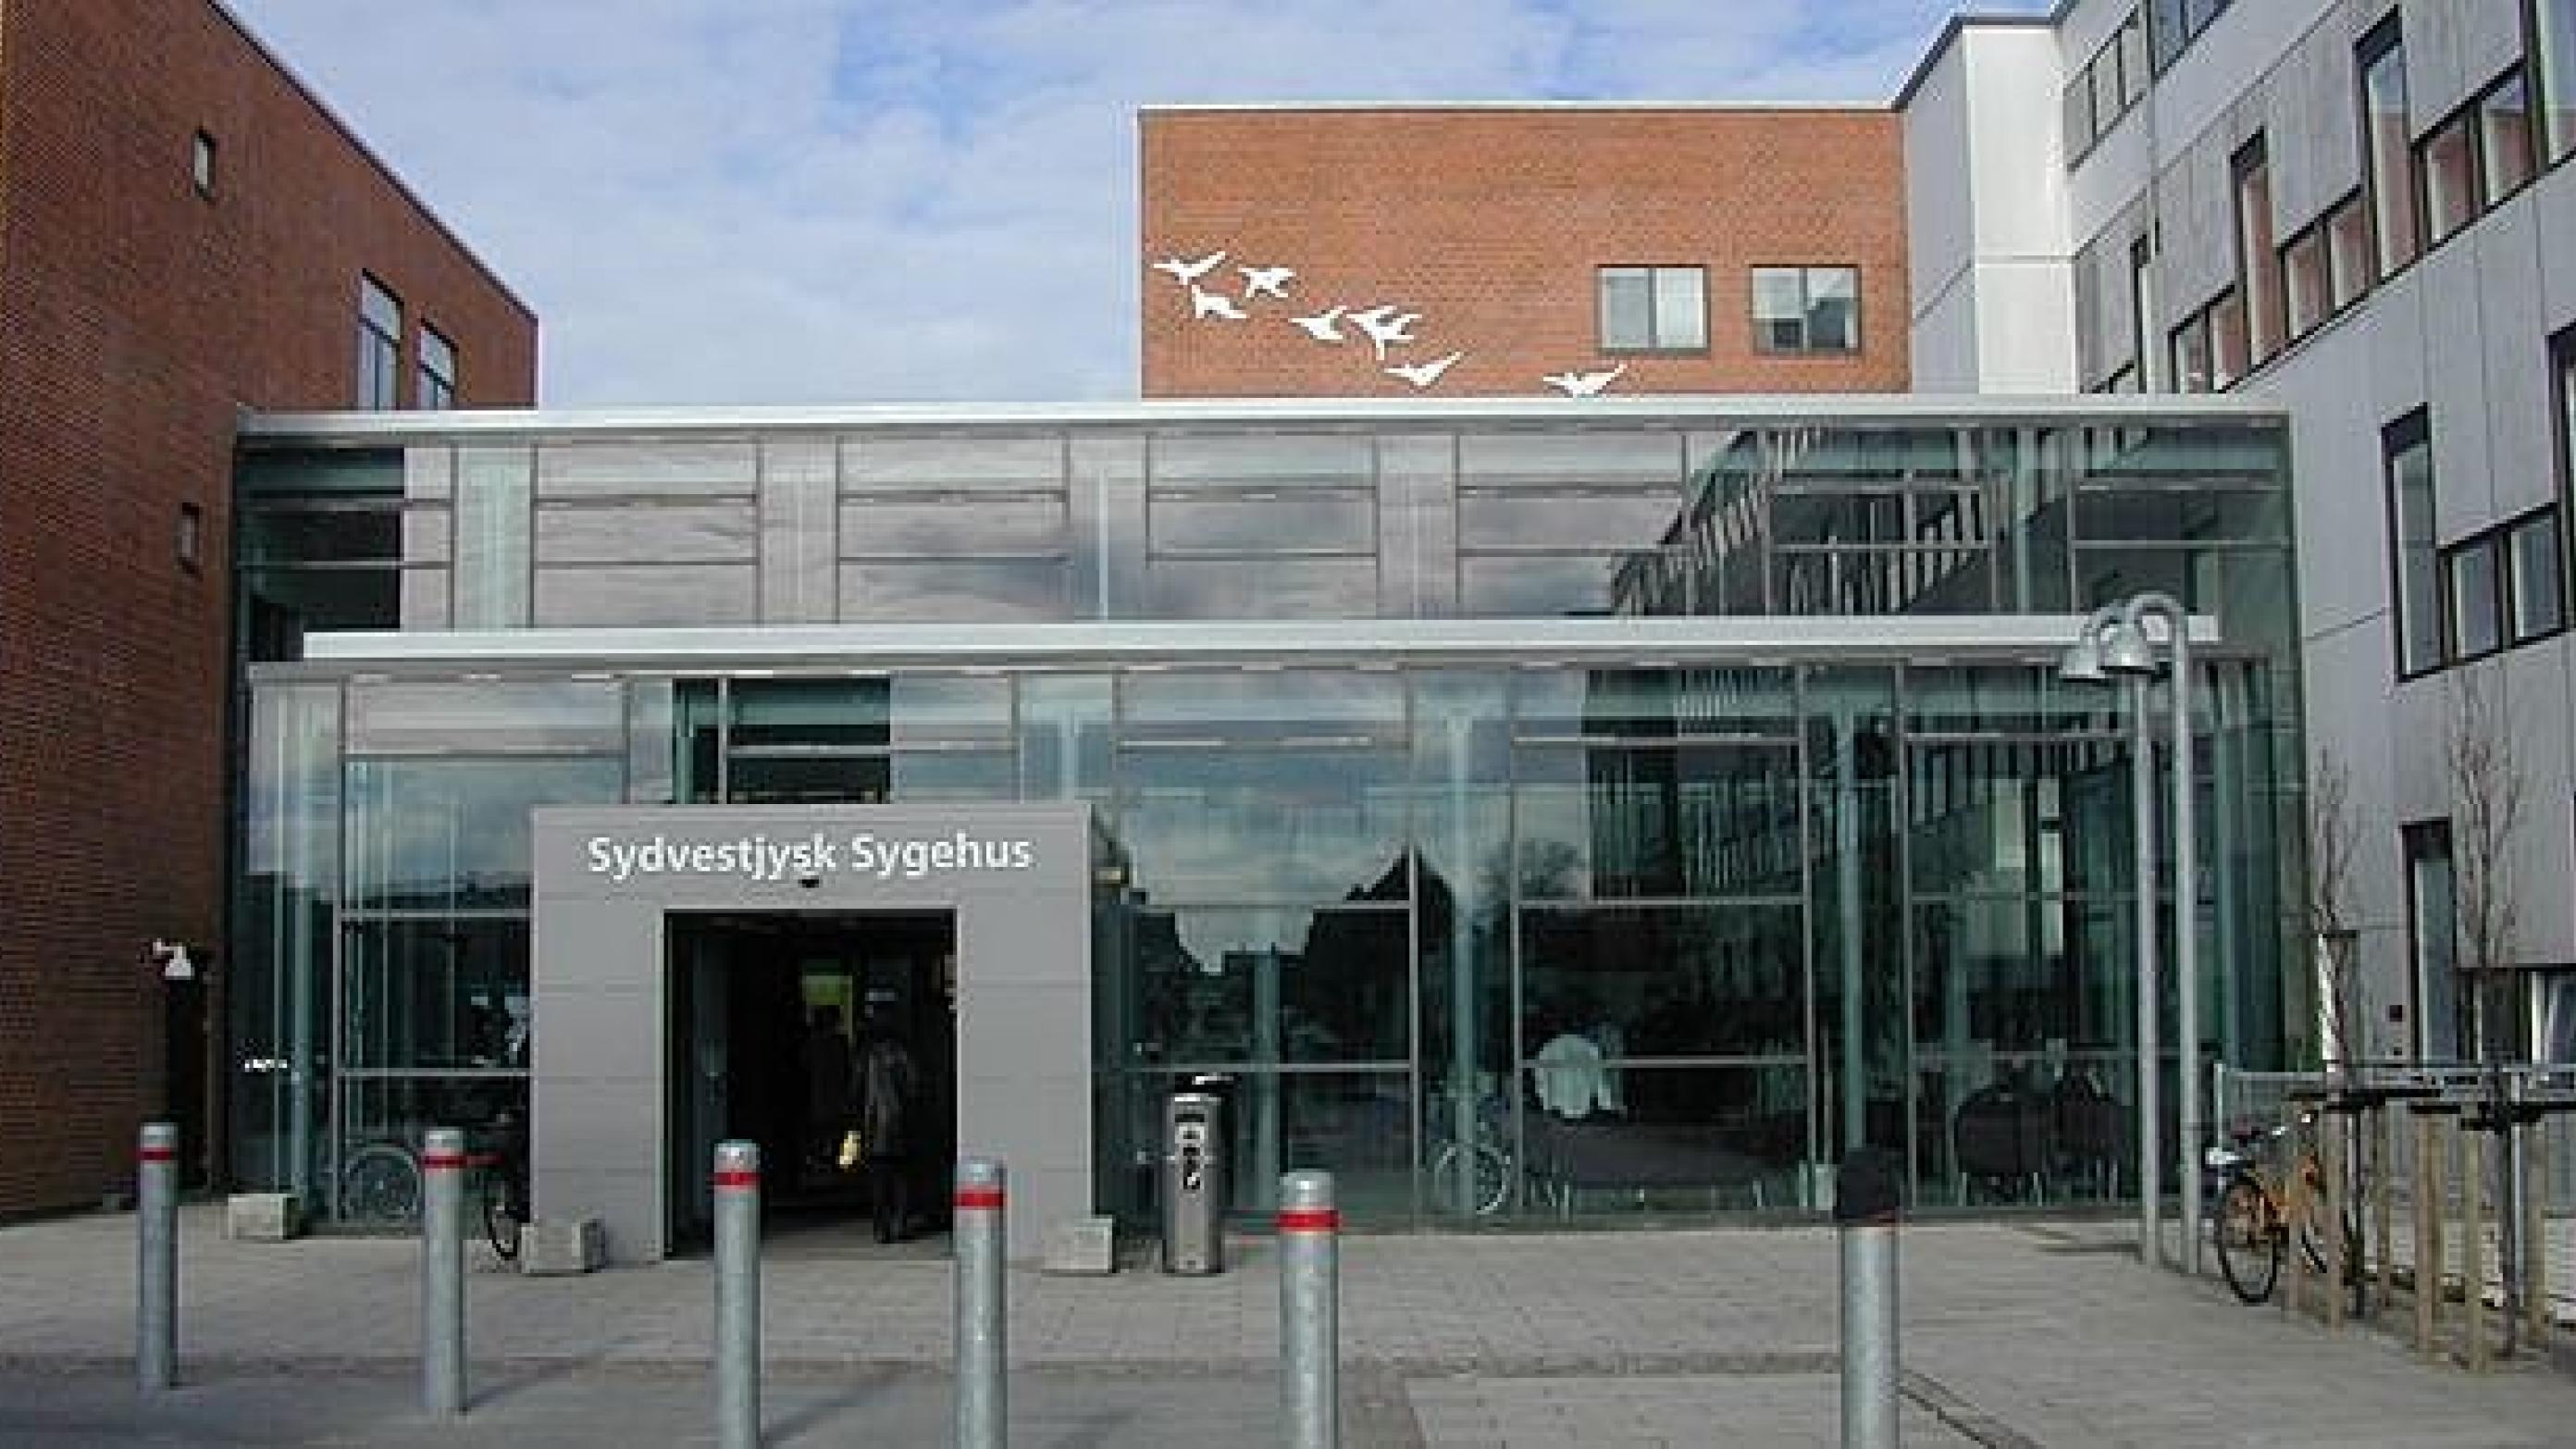 Blandt andet Sydvestjysk Sygehus i Esbjerg har måttet ansætte flere udenlandske læger via rekrutteringsbureuer. Fotto: Region Syddanmark.